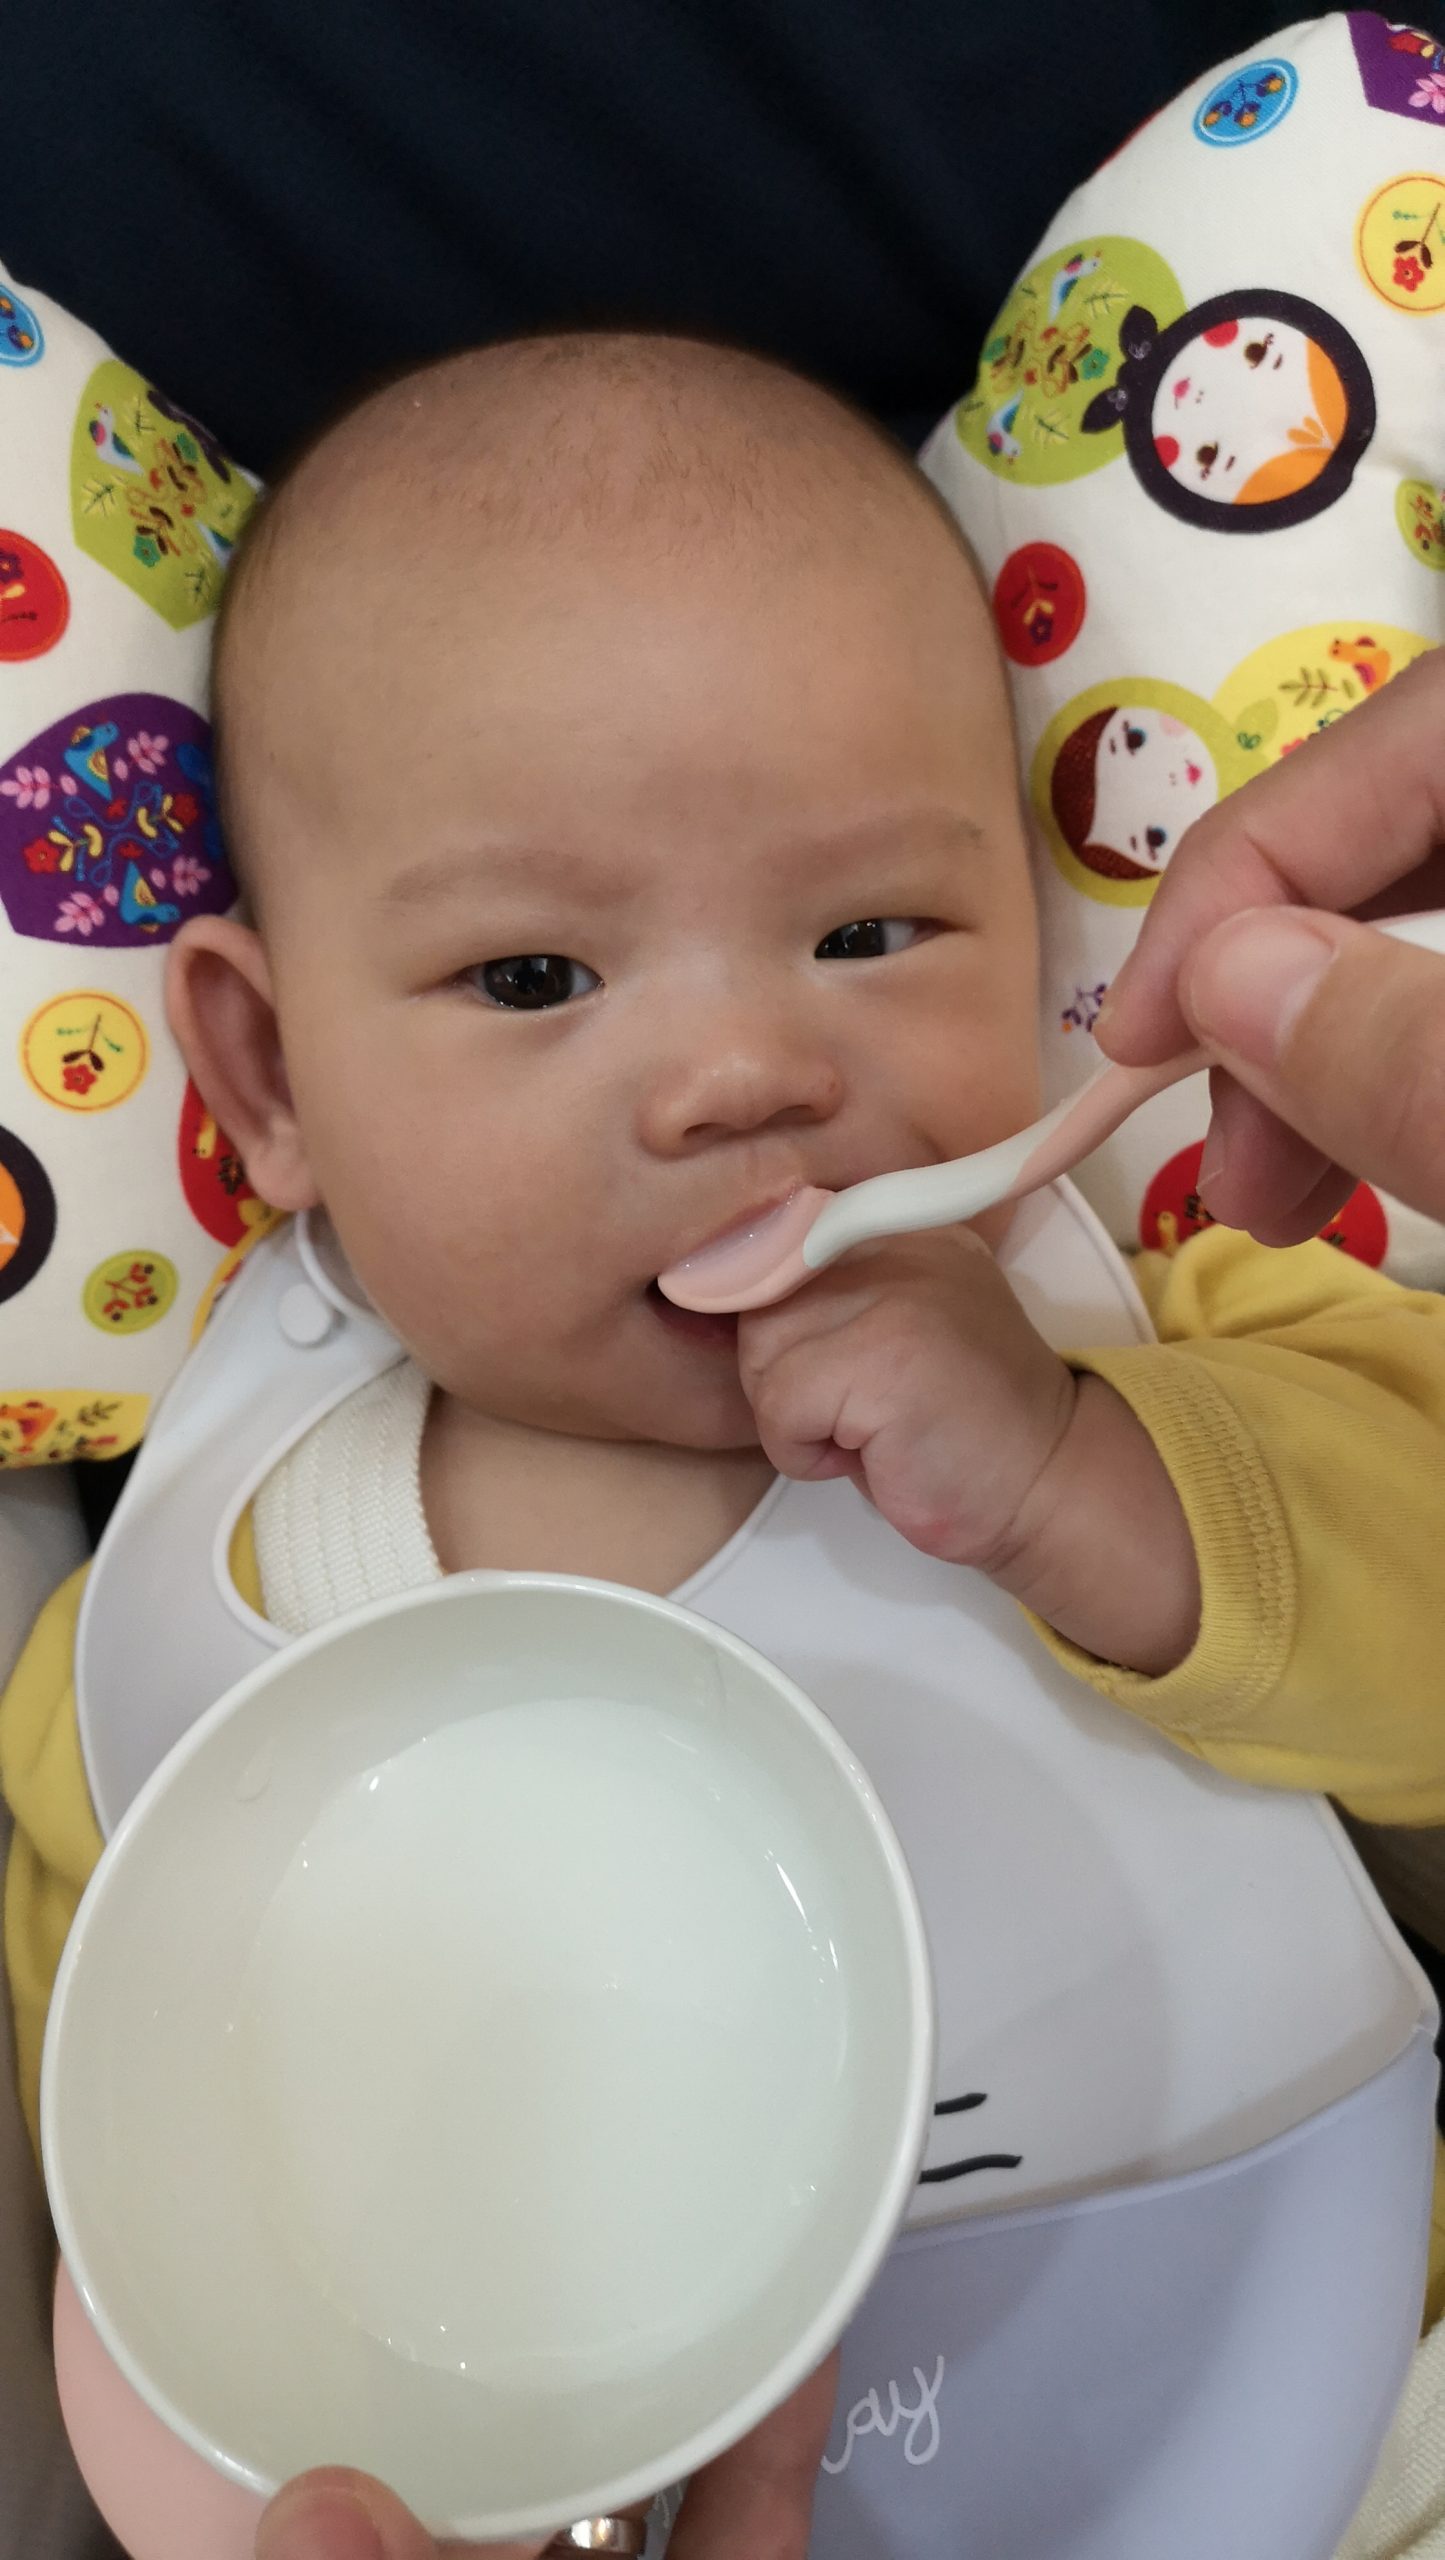 【寶寶4個月副食品製作】十倍粥米糊,怎麼餵寶寶吃副食品教學分享 @小環妞 幸福足跡